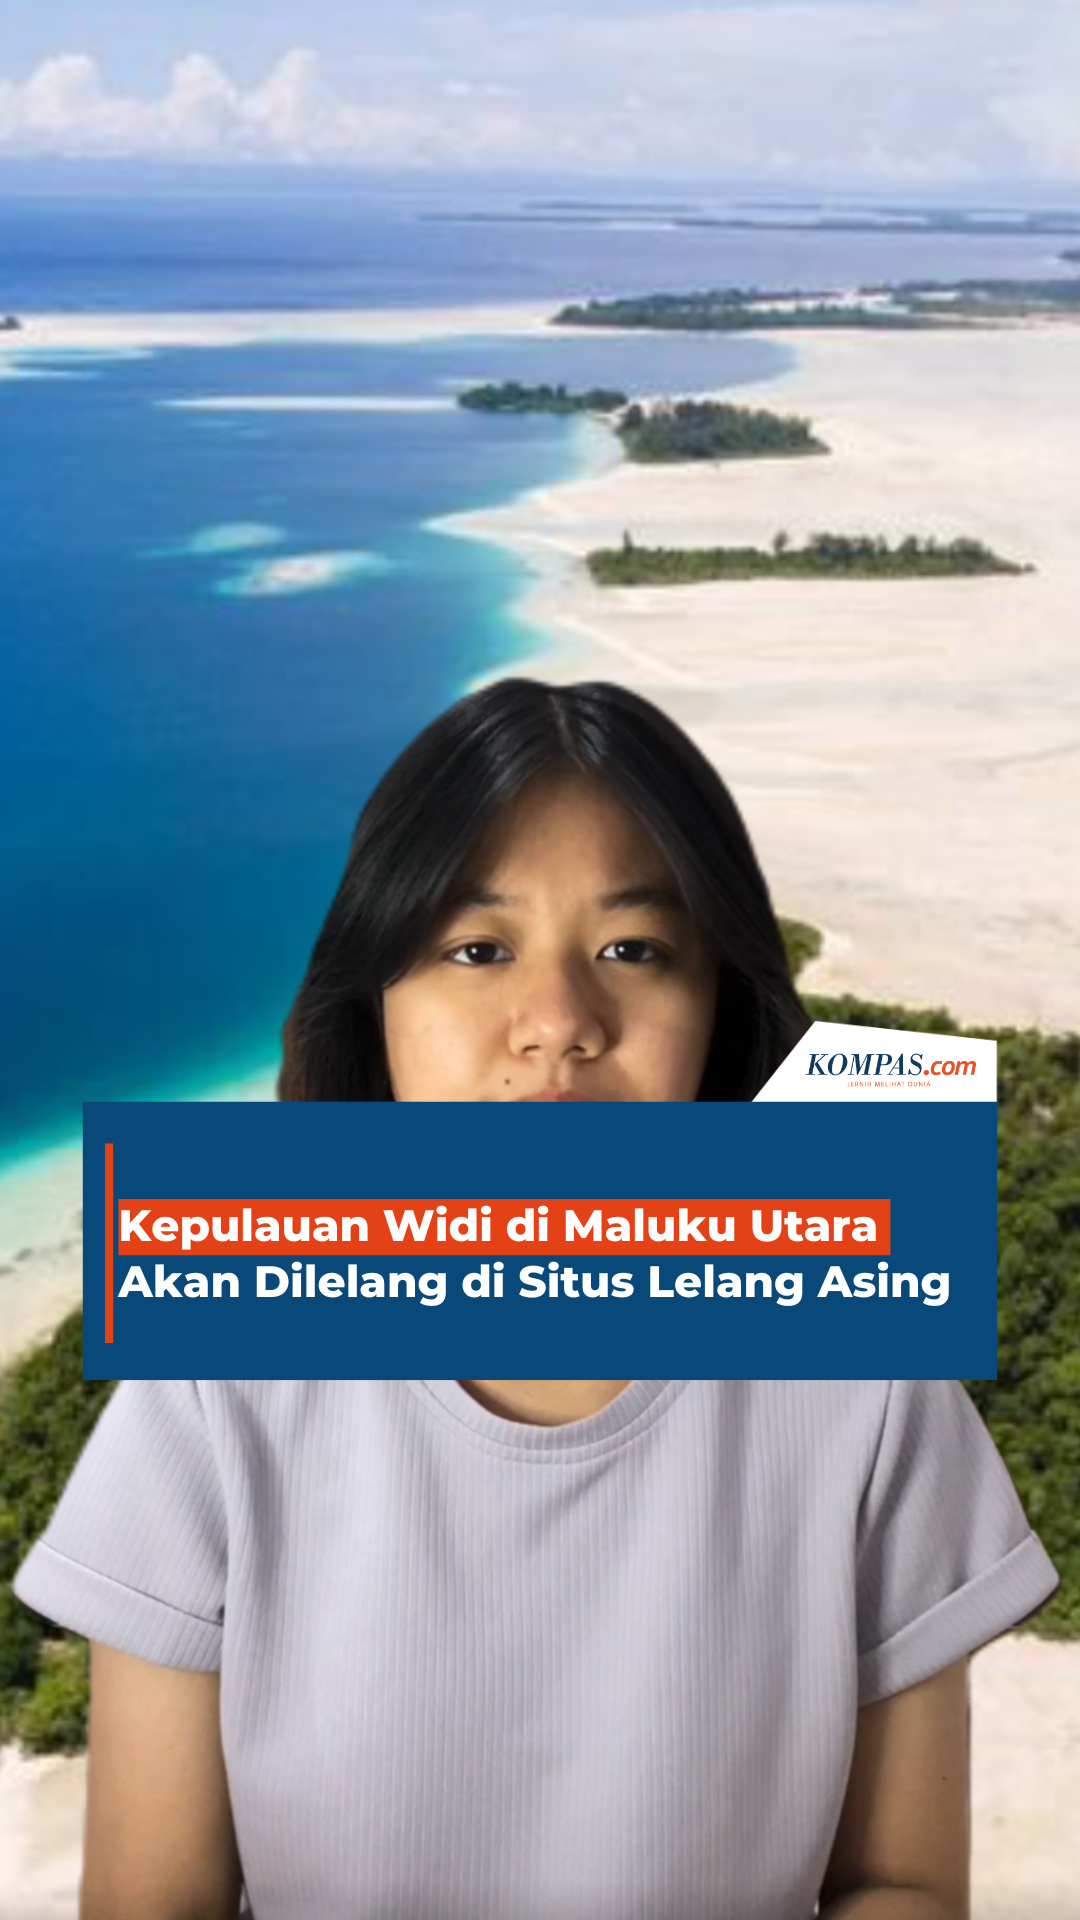 Kepulauan Widi di Halmahera Selatan, Maluku Utara Akan Dilelang di Situs Lelang Asing